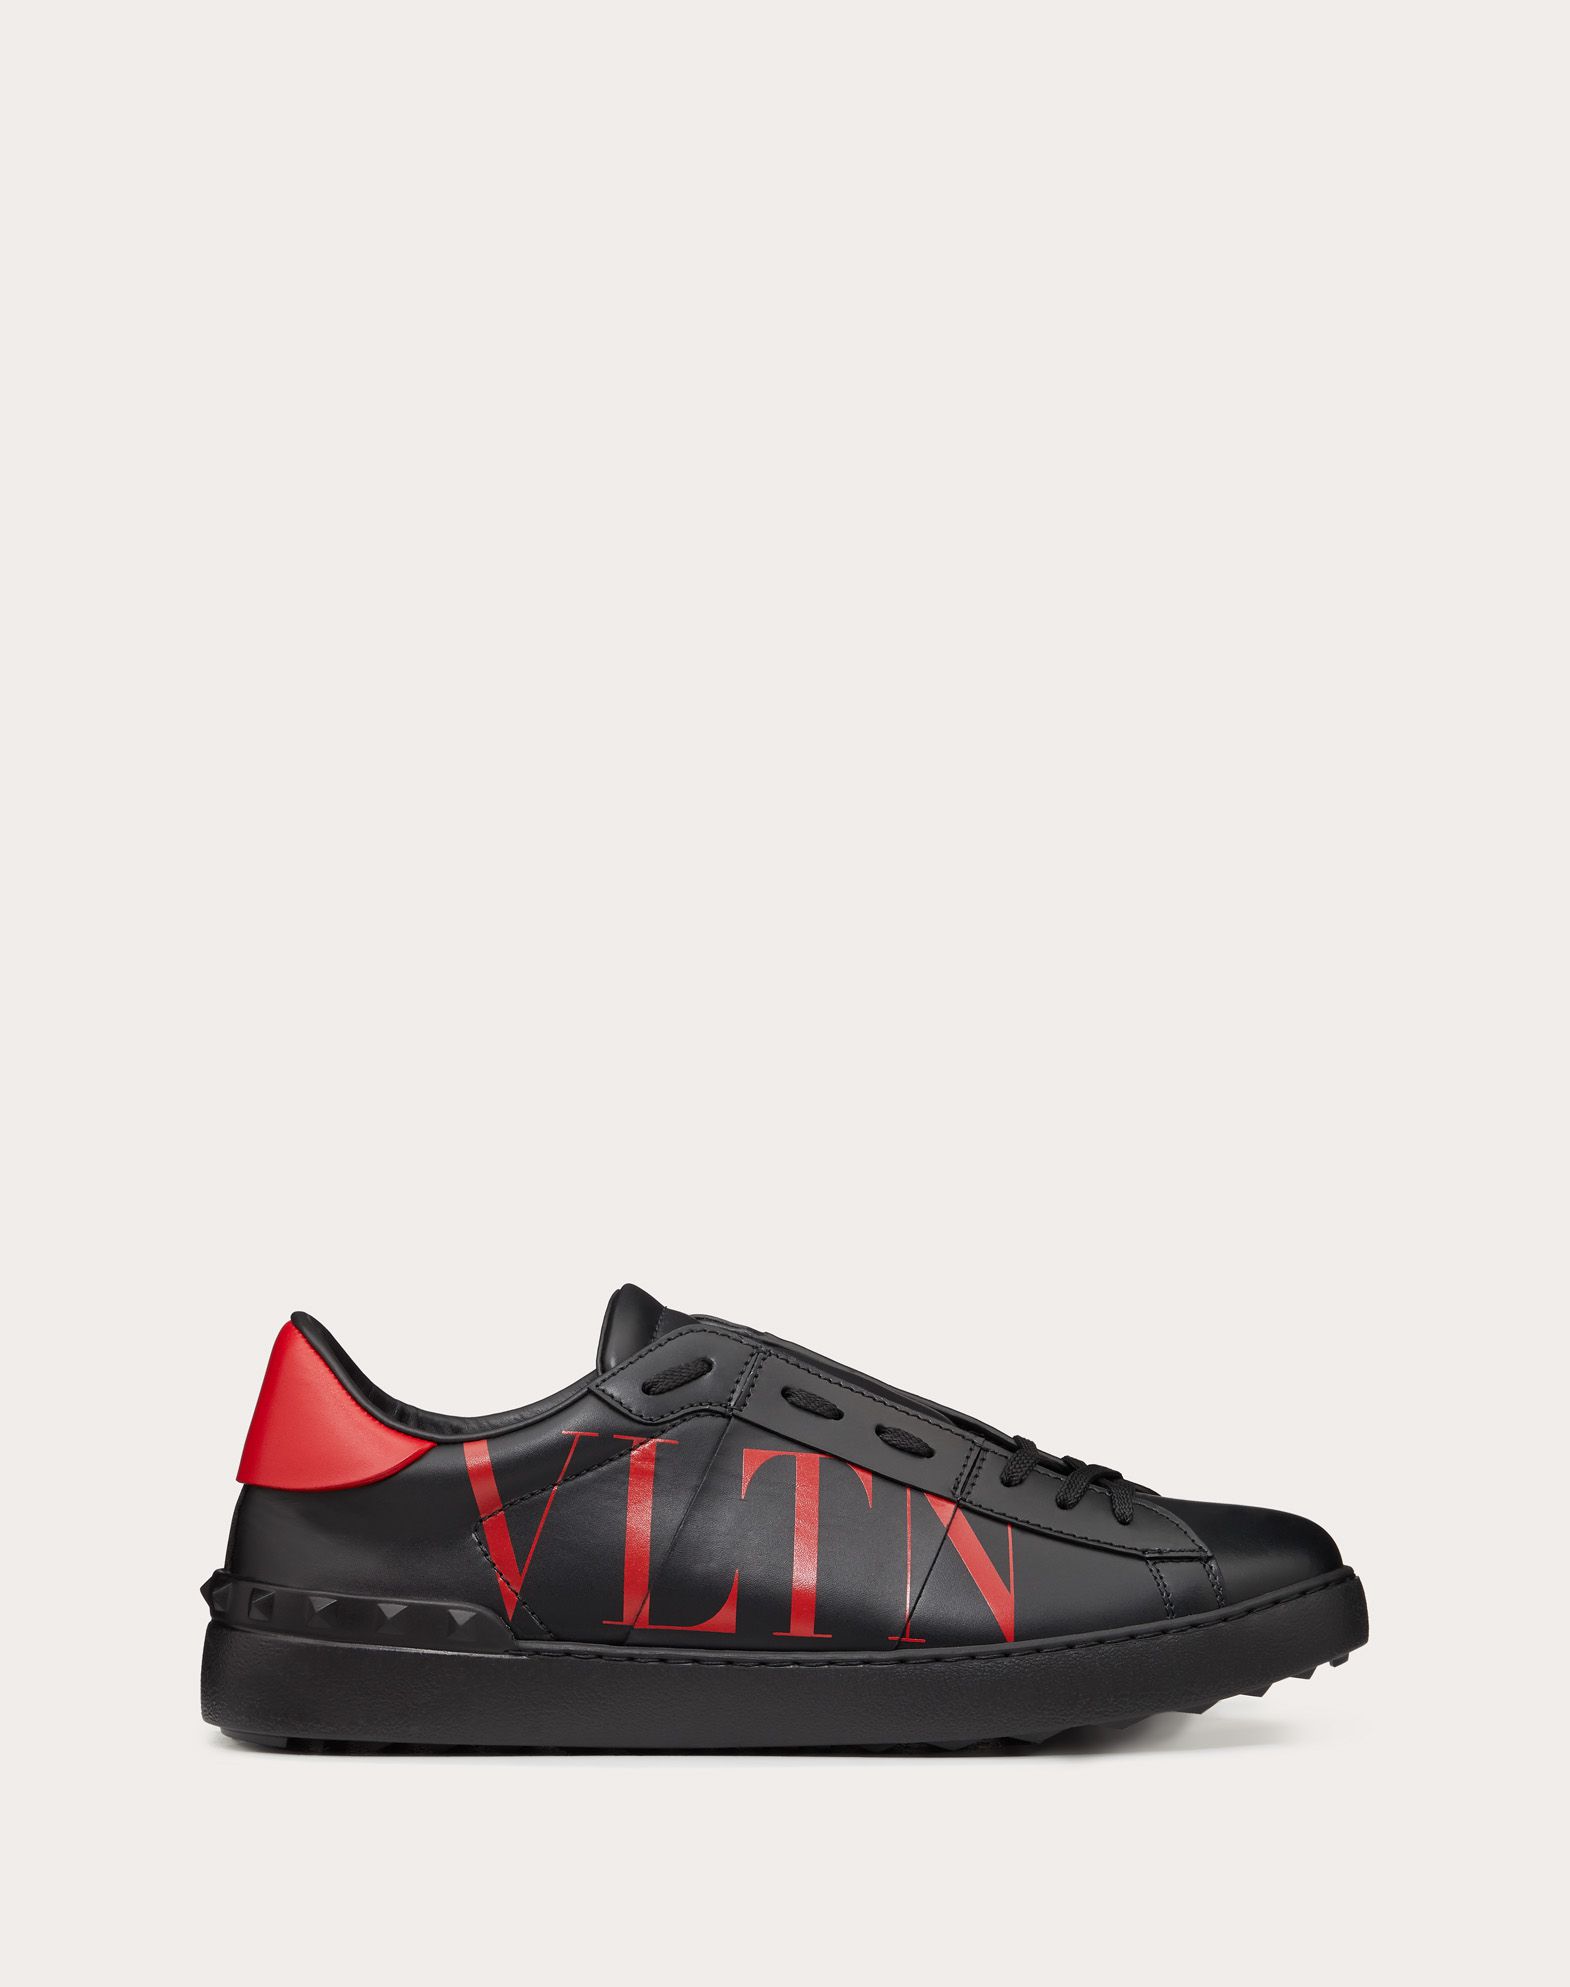 Open Sneaker with VLTN Print for Man 